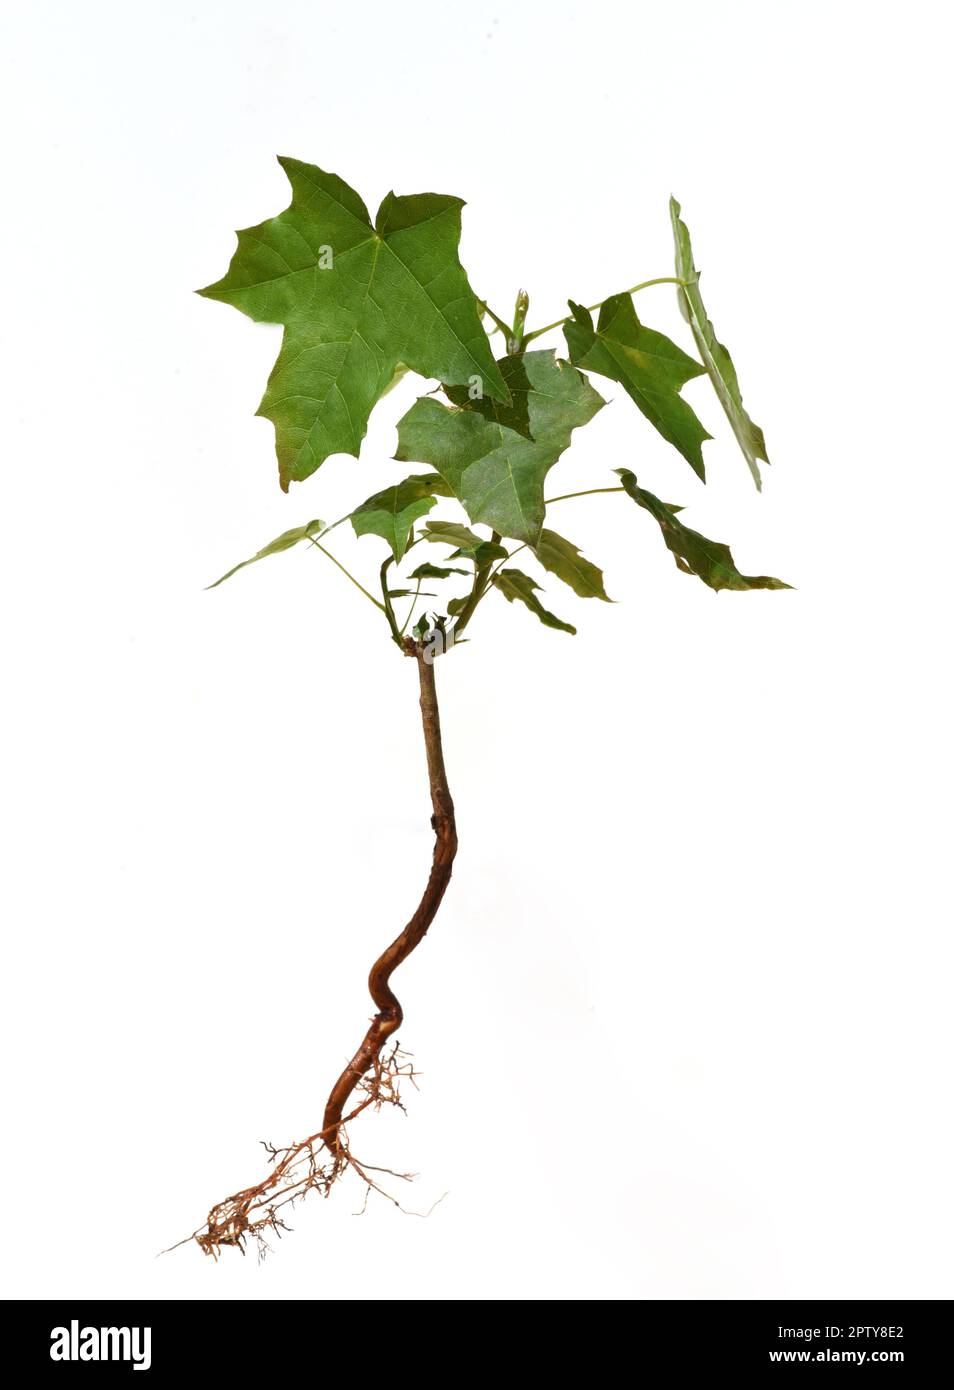 Amberbaum, Liquidambar styraciflua genannt, sind Baeume, die in Deutschland besonders im Herbst durch ihre schoen gefaerbten Blaetter auffallen. Dolce Foto Stock